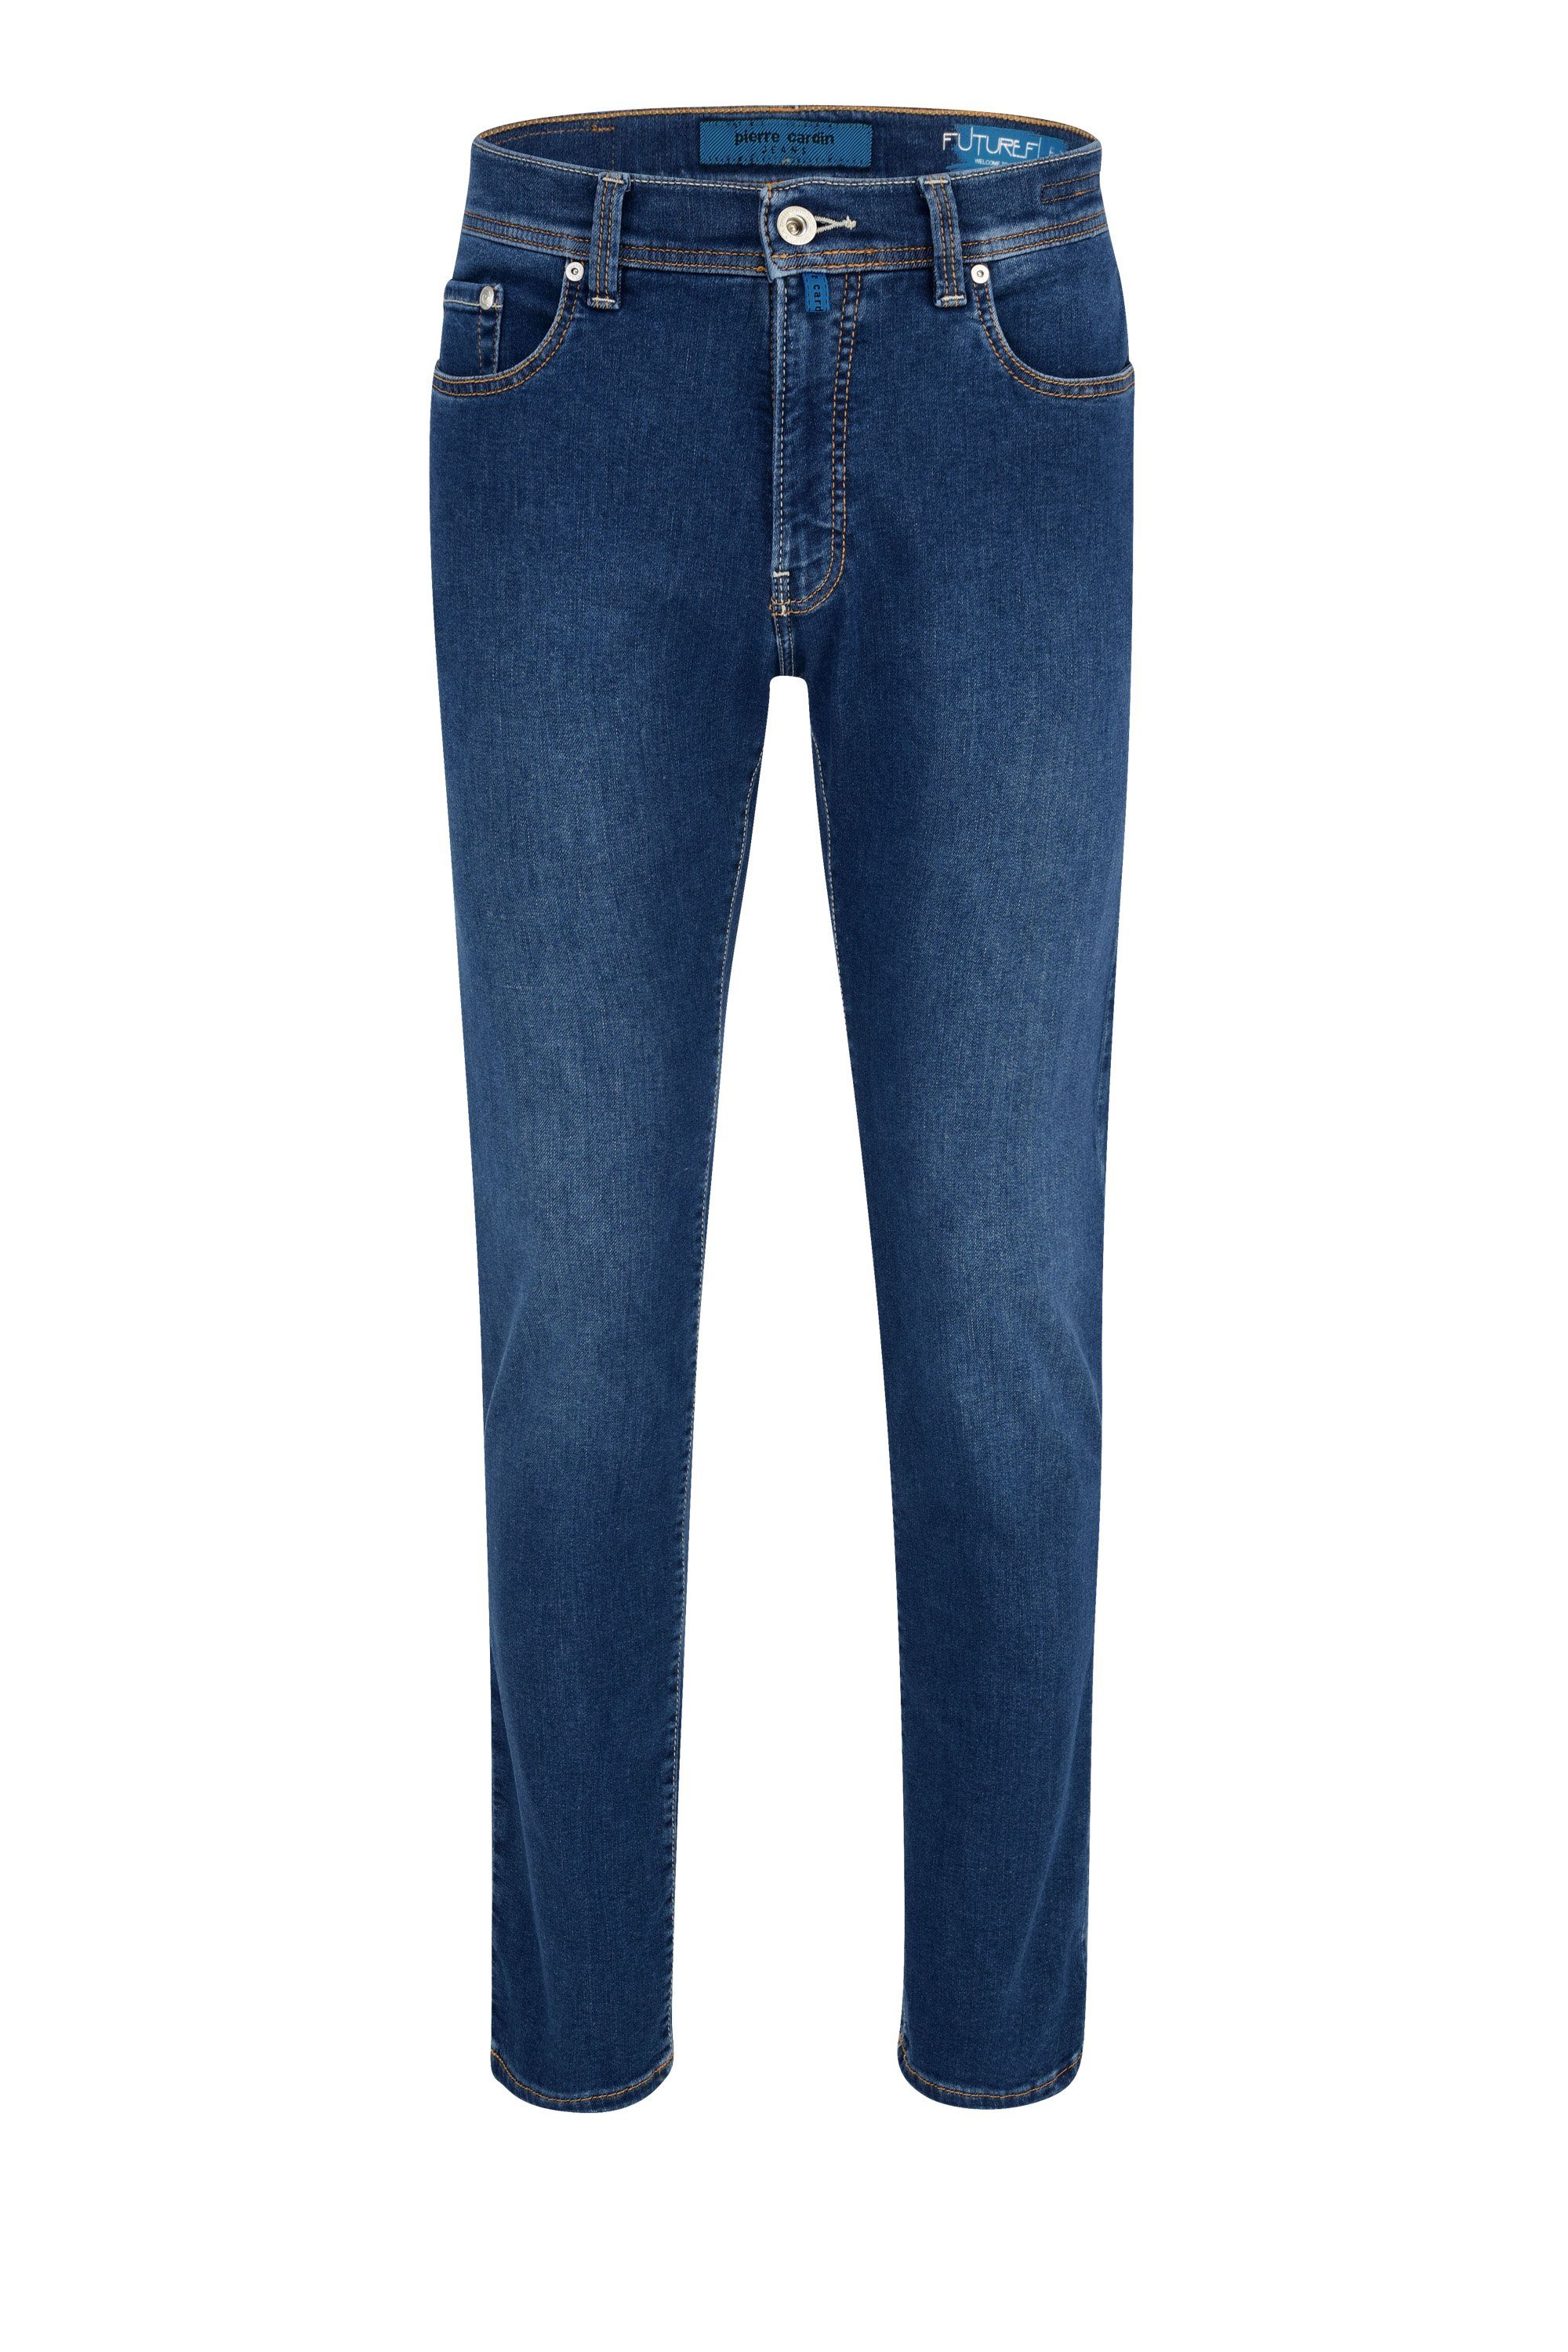 Pierre Cardin 5-Pocket-Jeans PIERRE CARDIN FUTUREFLEX LYON used washed blue 3451 8880.98